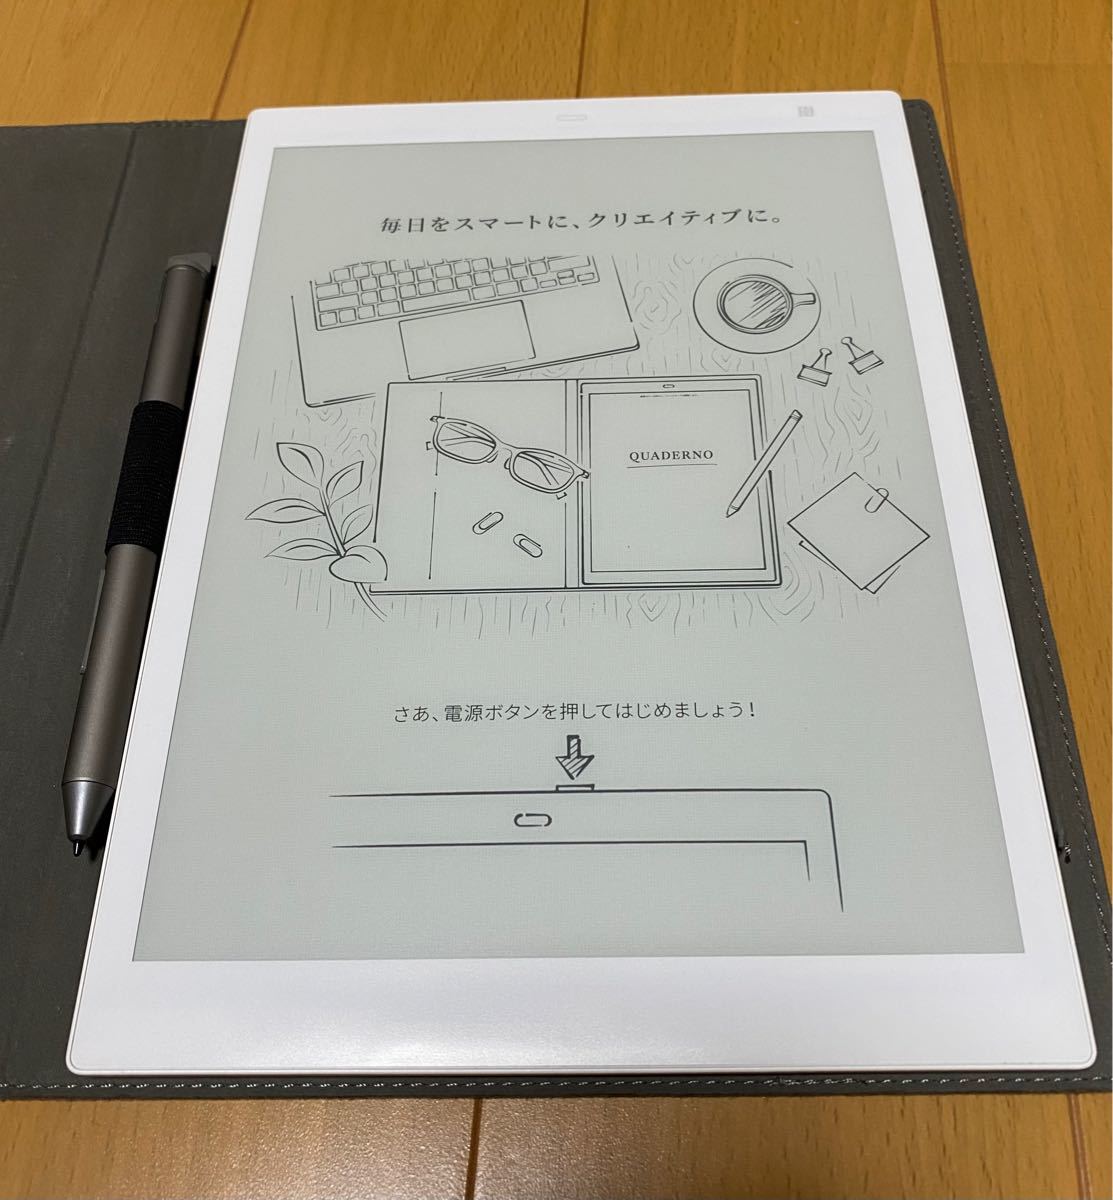 富士通 10.3型フレキシブル電子ペーパー QUADERNO A5サイズ / FMV